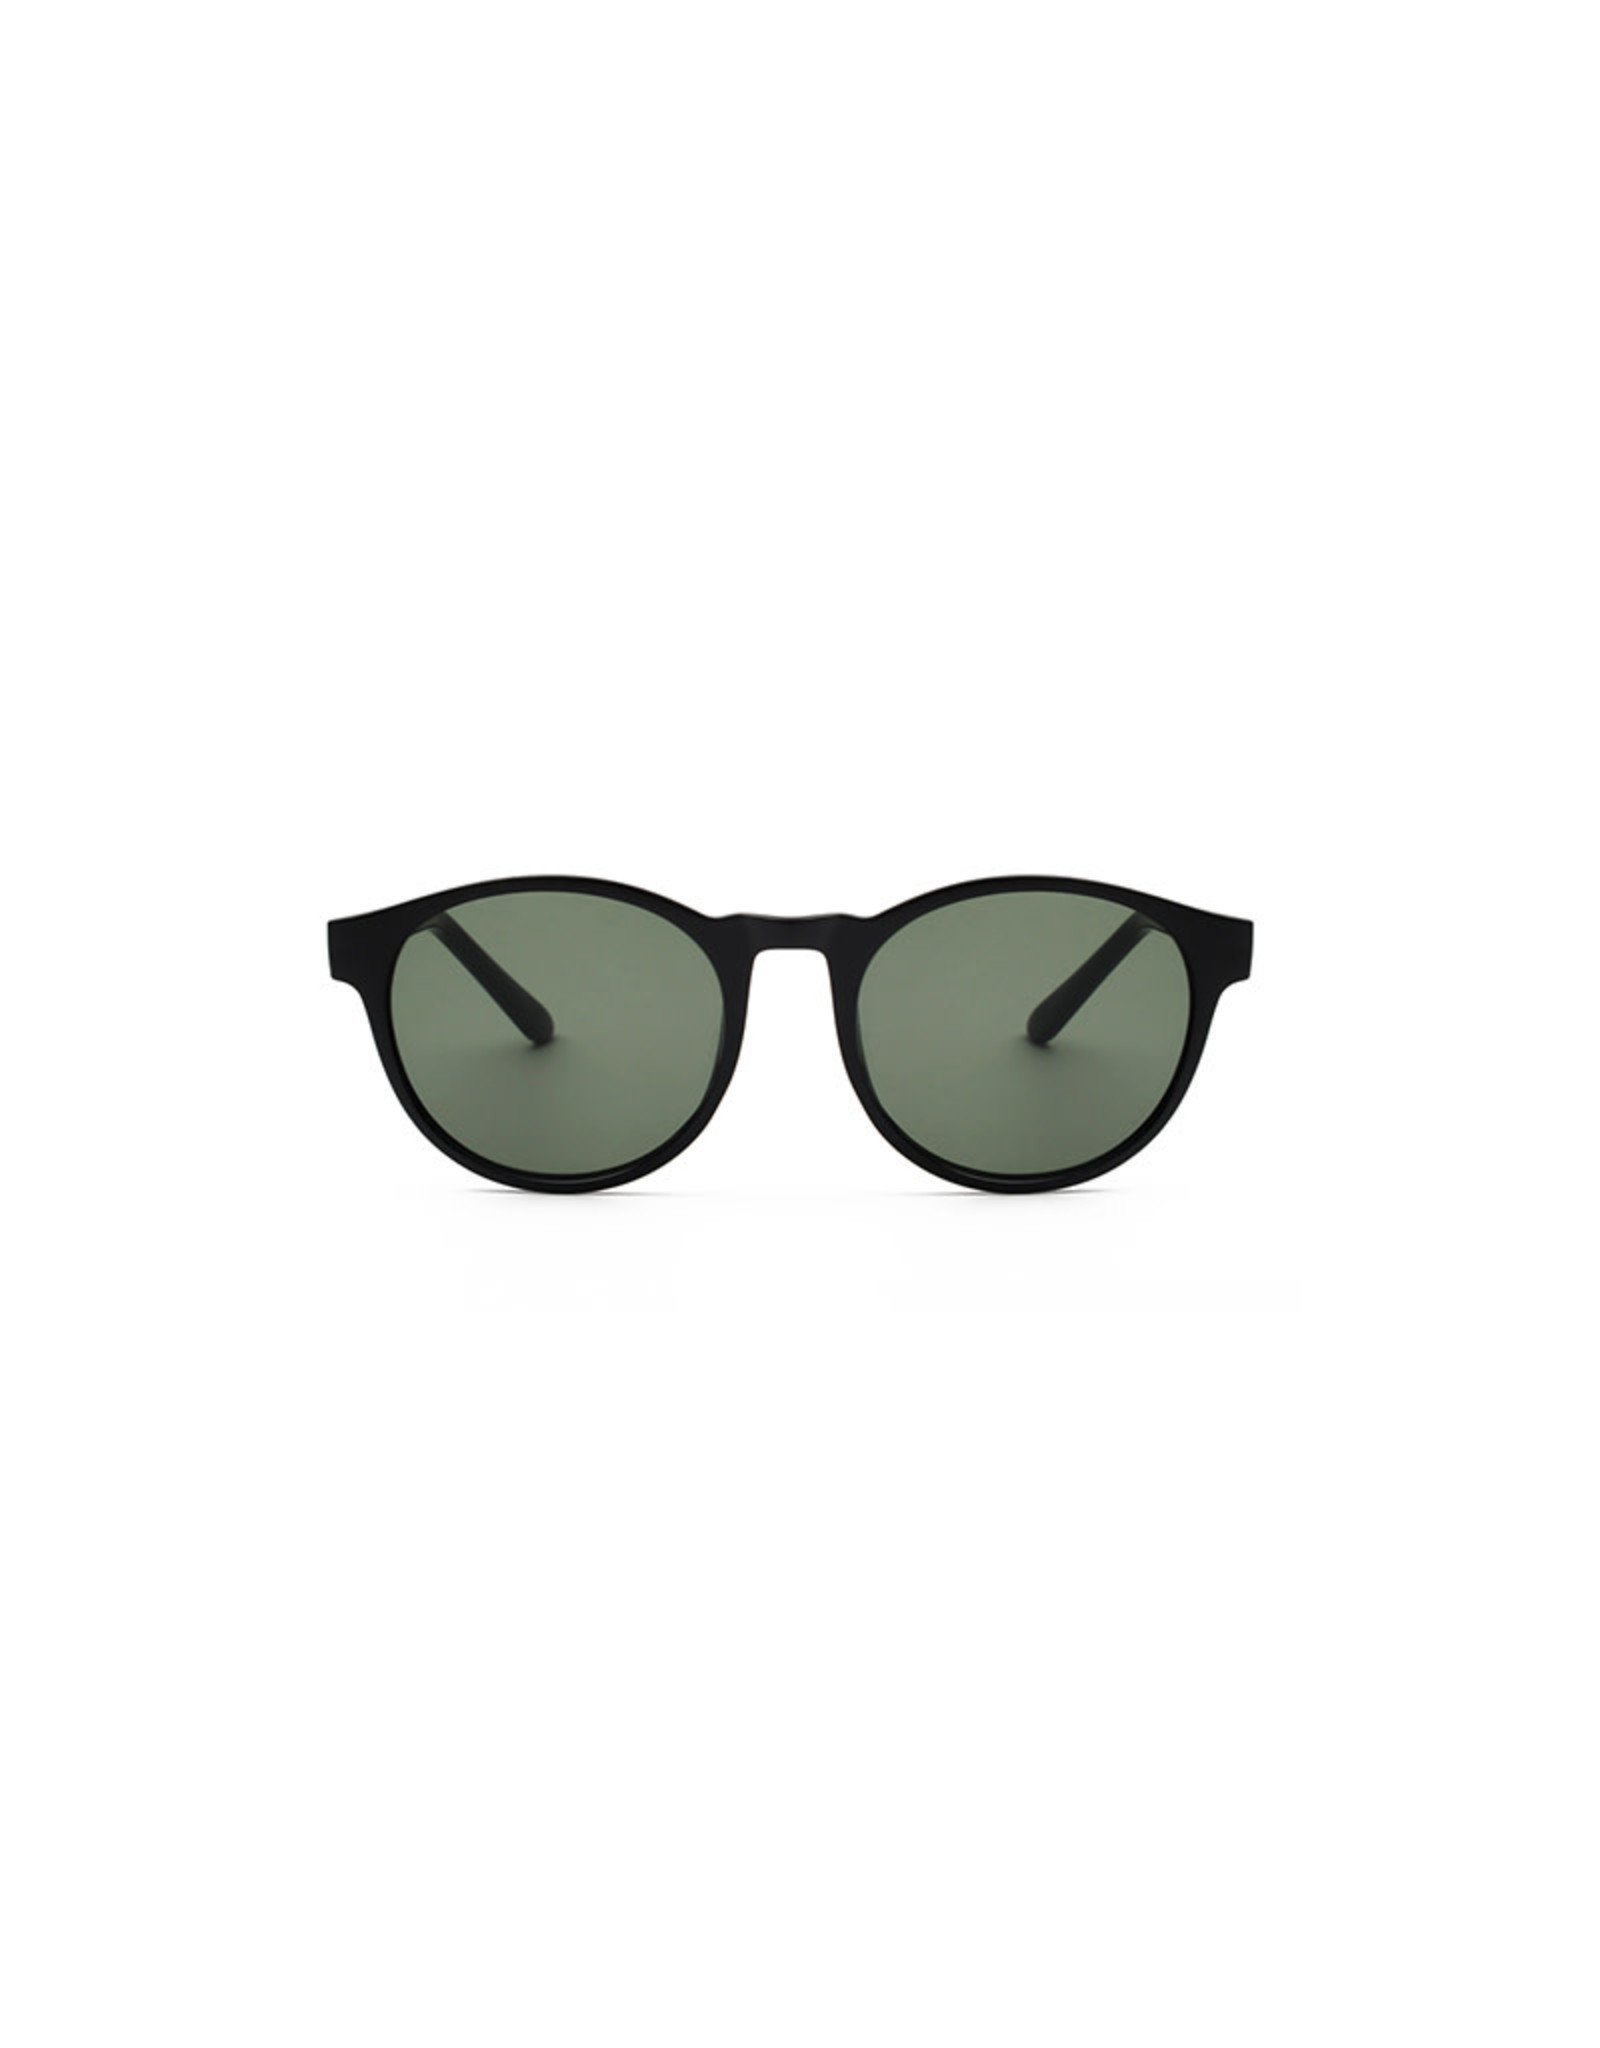 A.Kjærbede Sunglasses Marvin | Black